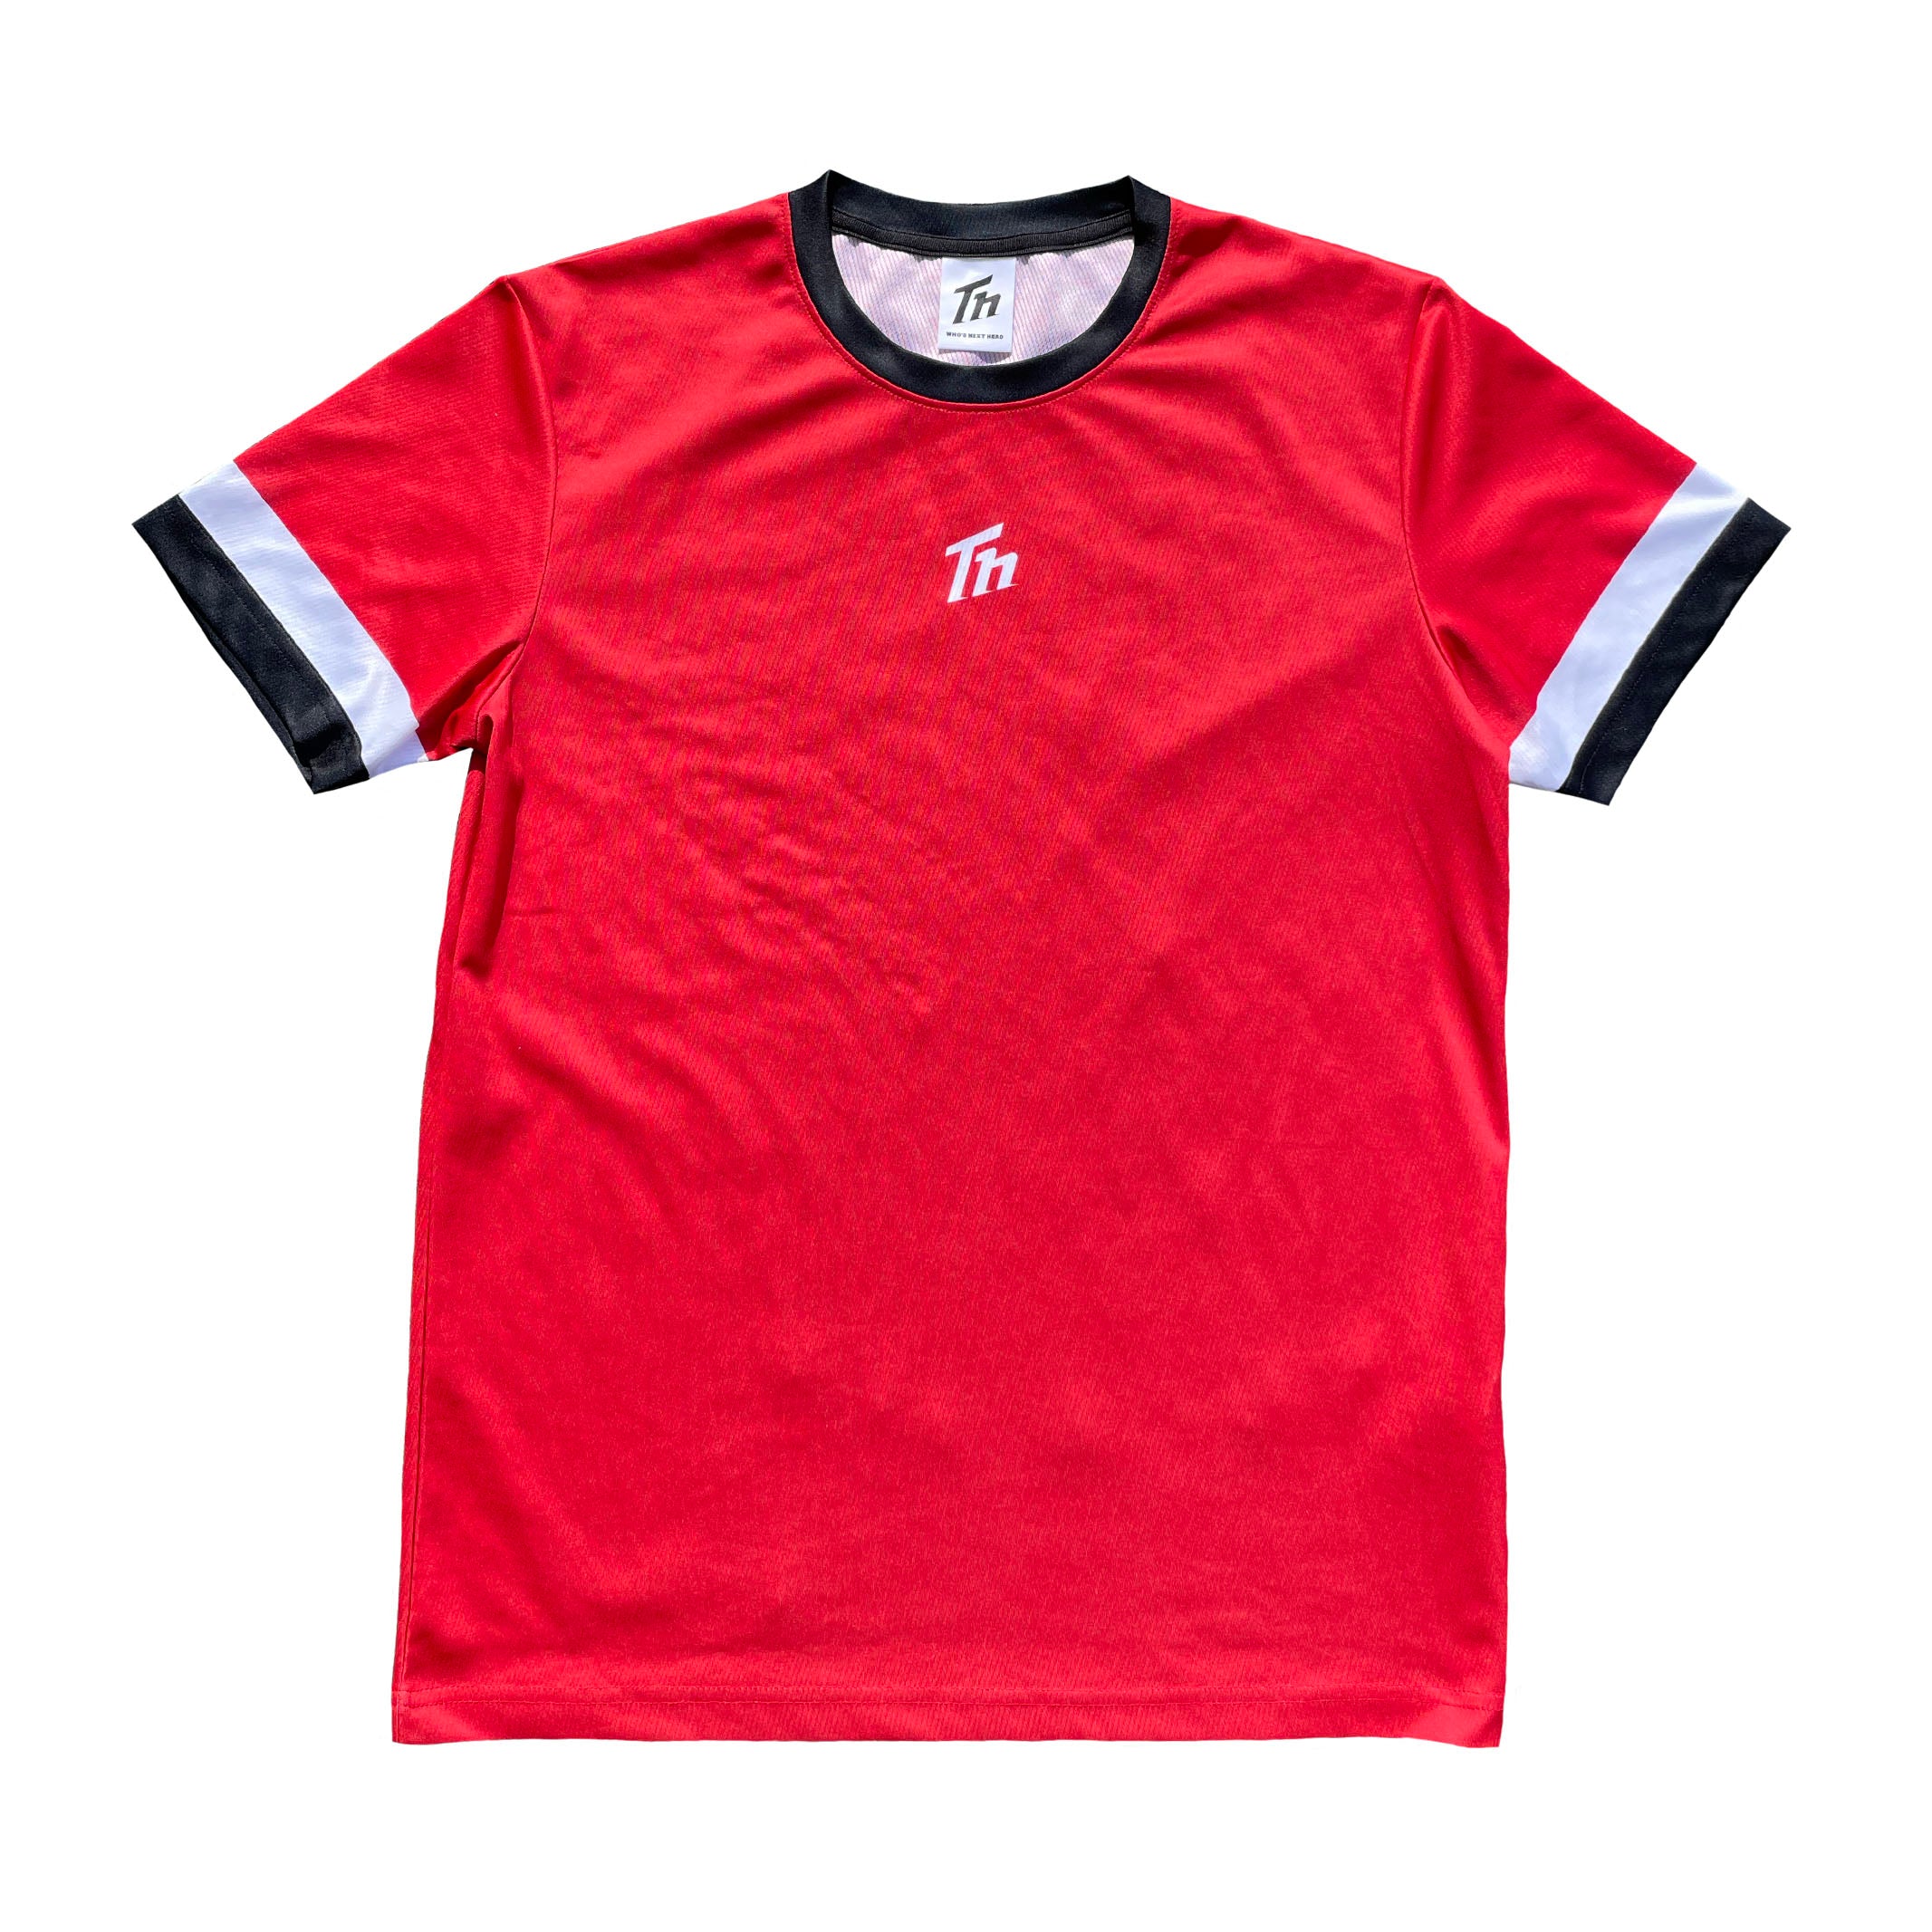 国内外の人気 テニスウェア TM Tシャツ(長袖) テニスの人気アイテム 